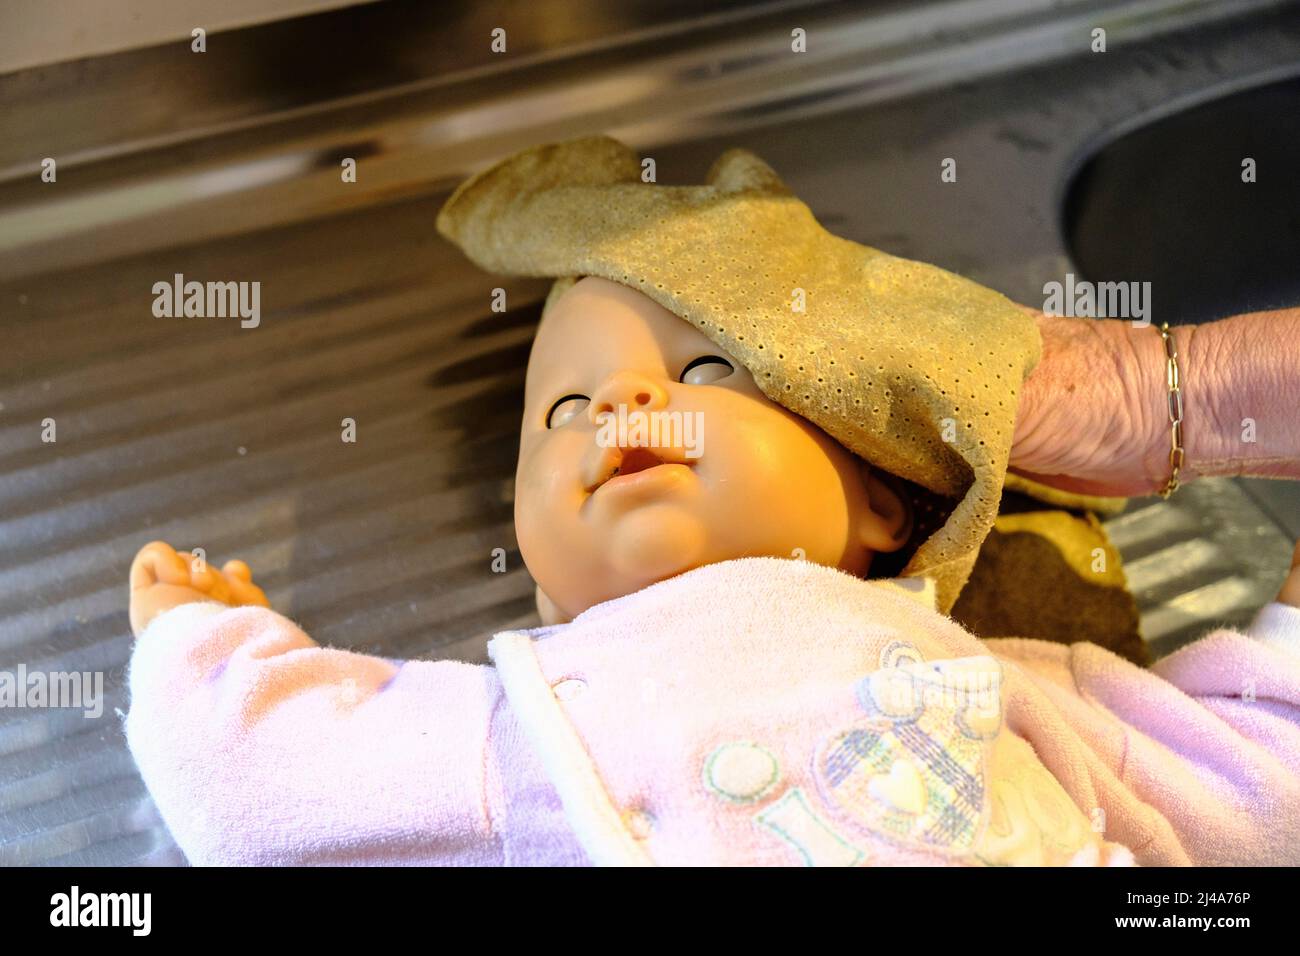 Decontamination et desinfection des jouets des enfants dans une garderie |  Toys Decontamination and desinfection in a child care settings Stock Photo  - Alamy